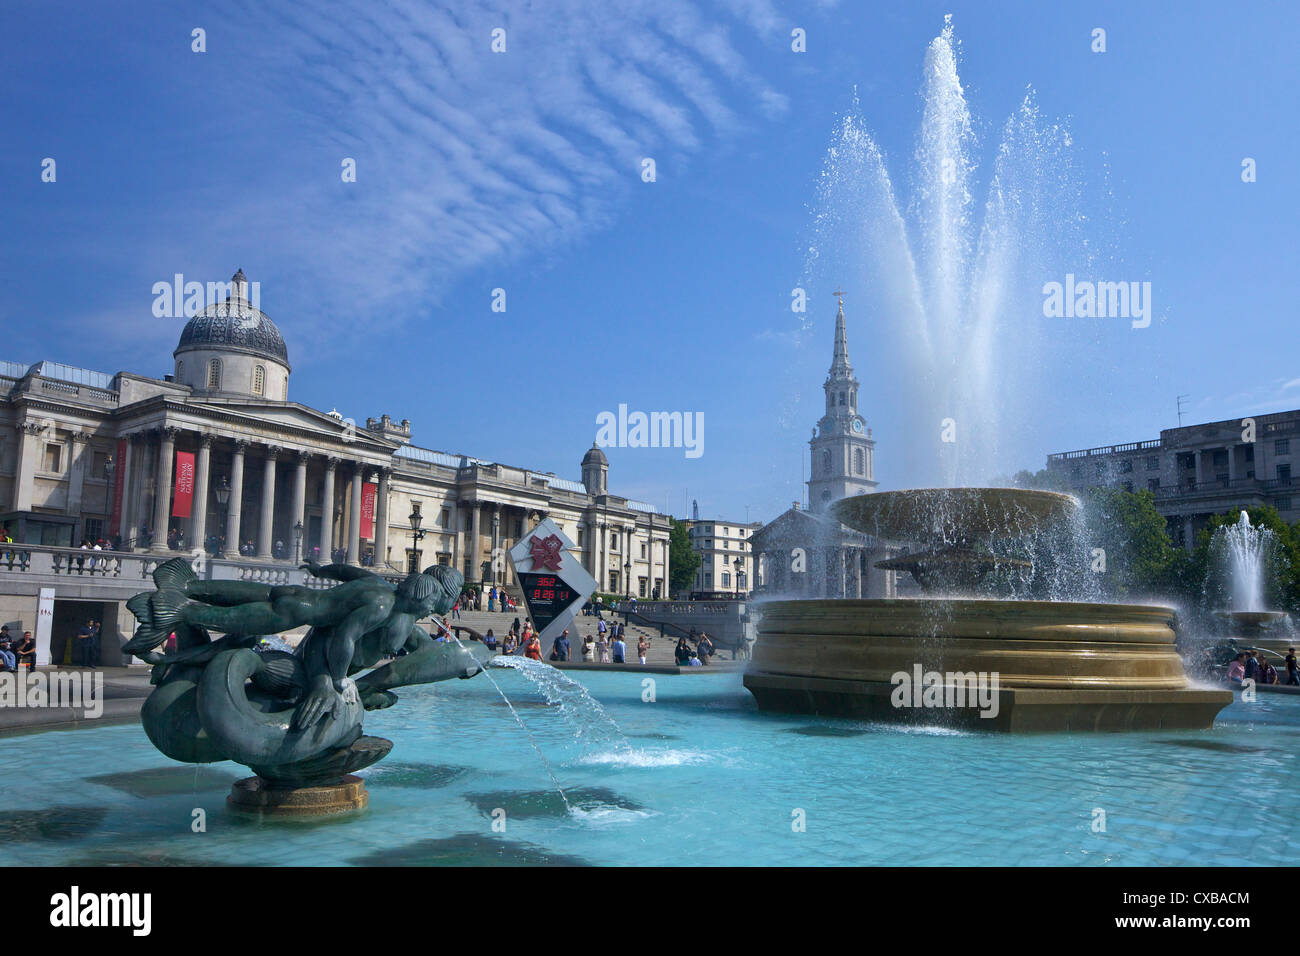 Los tritones y fuente del delfín con el reloj de cuenta atrás digital Olímpico y la Galería Nacional, Trafalgar Square, Londres Foto de stock